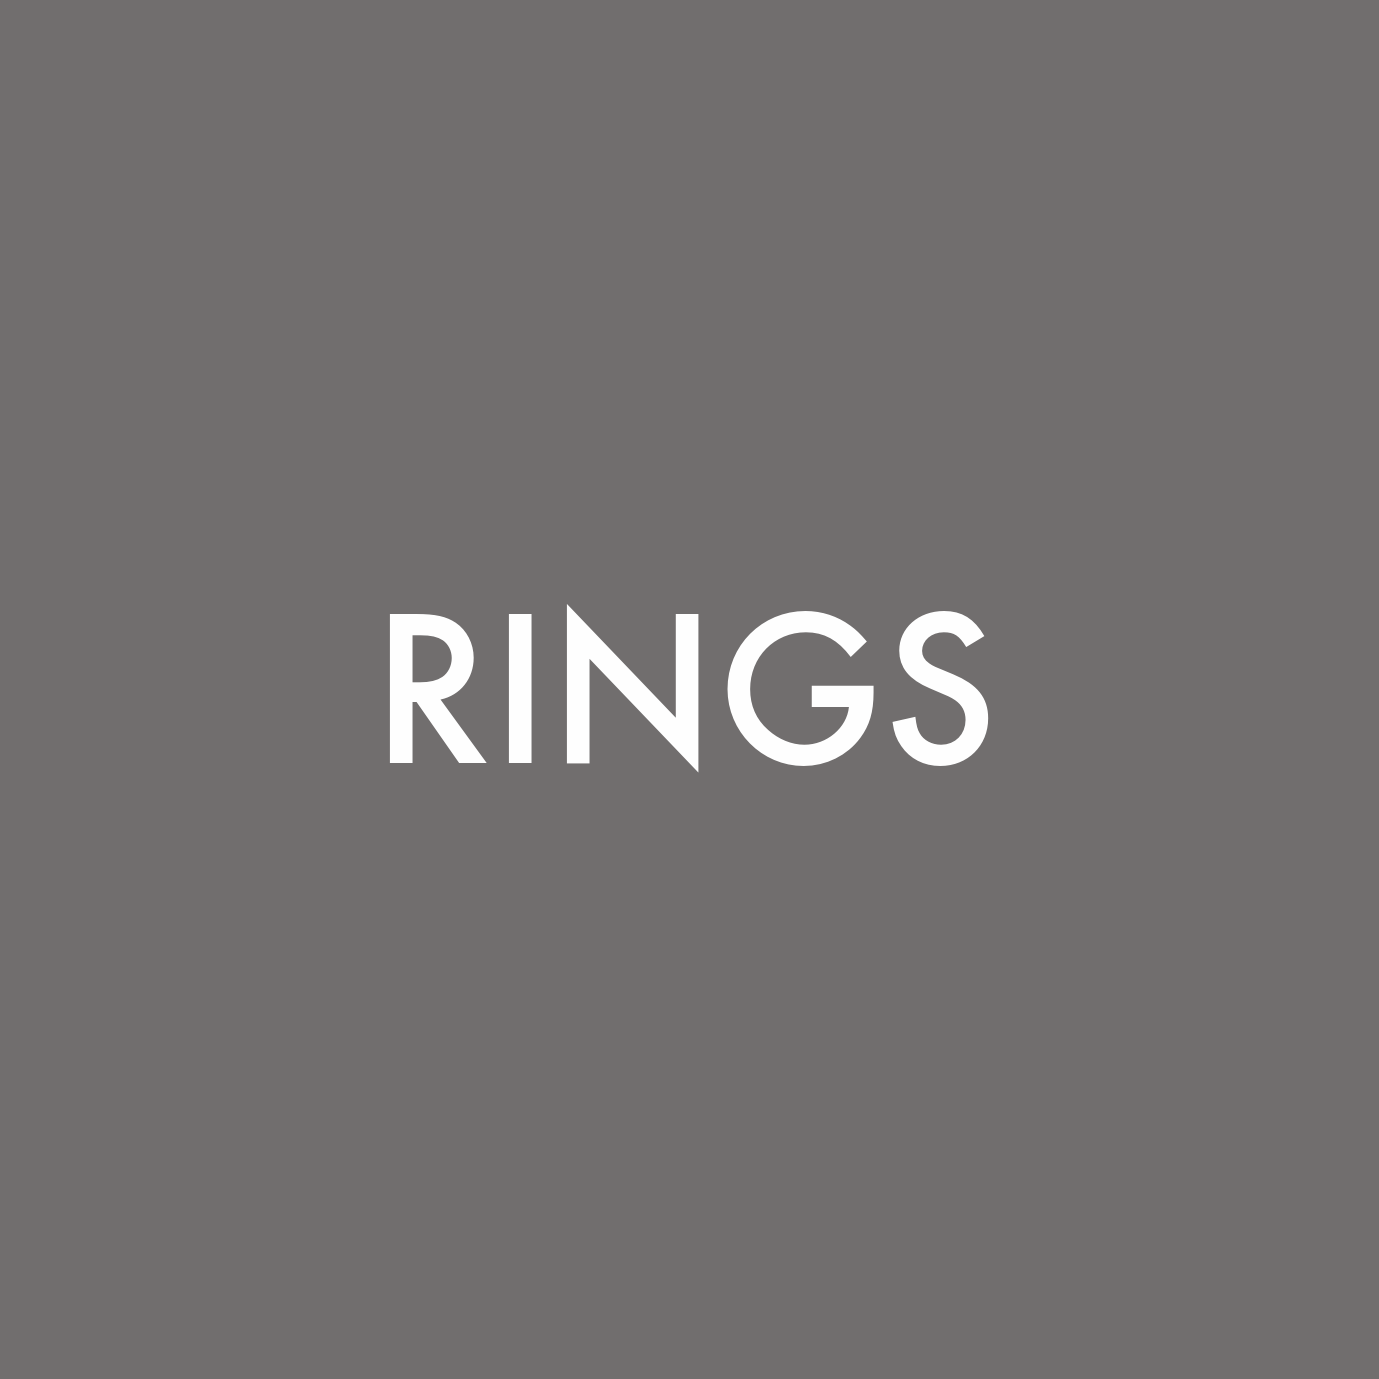 Rings – Inglis Jewellers